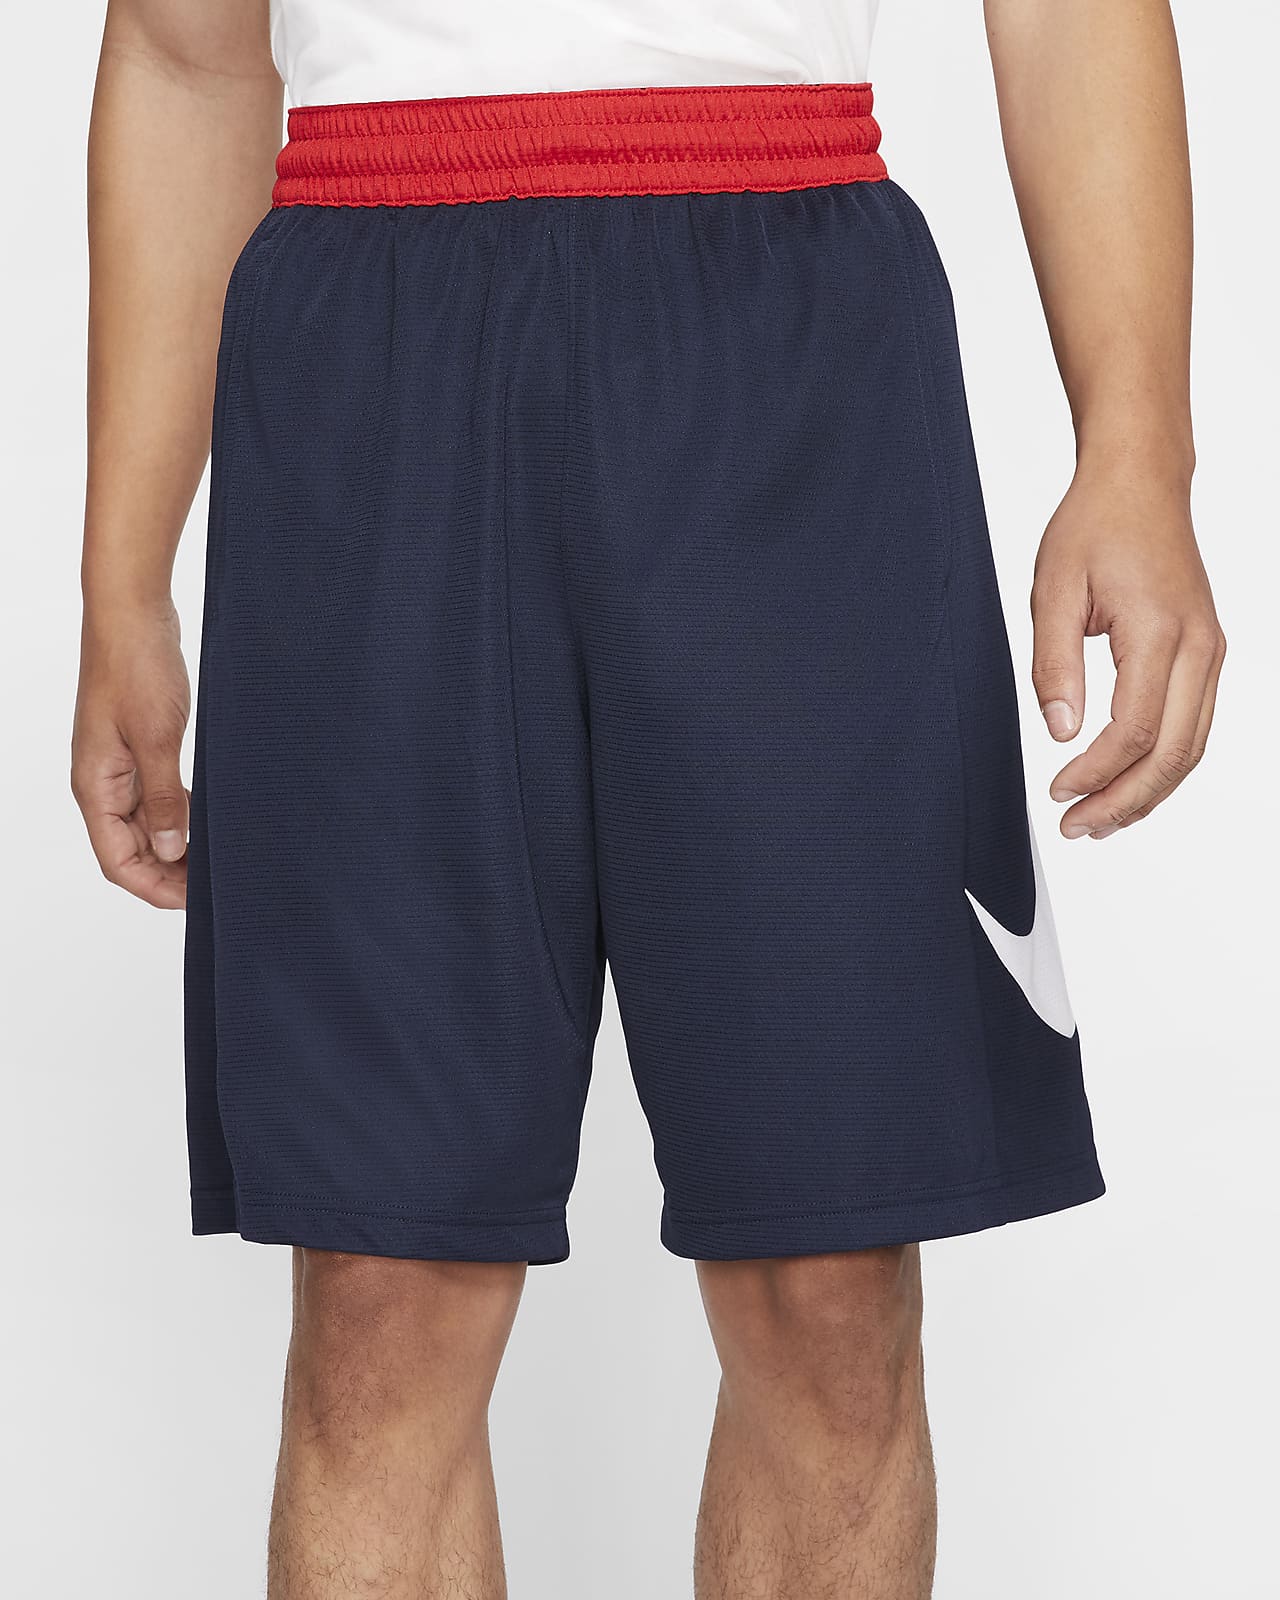 Shorts de básquetbol para hombre Nike HBR. Nike.com